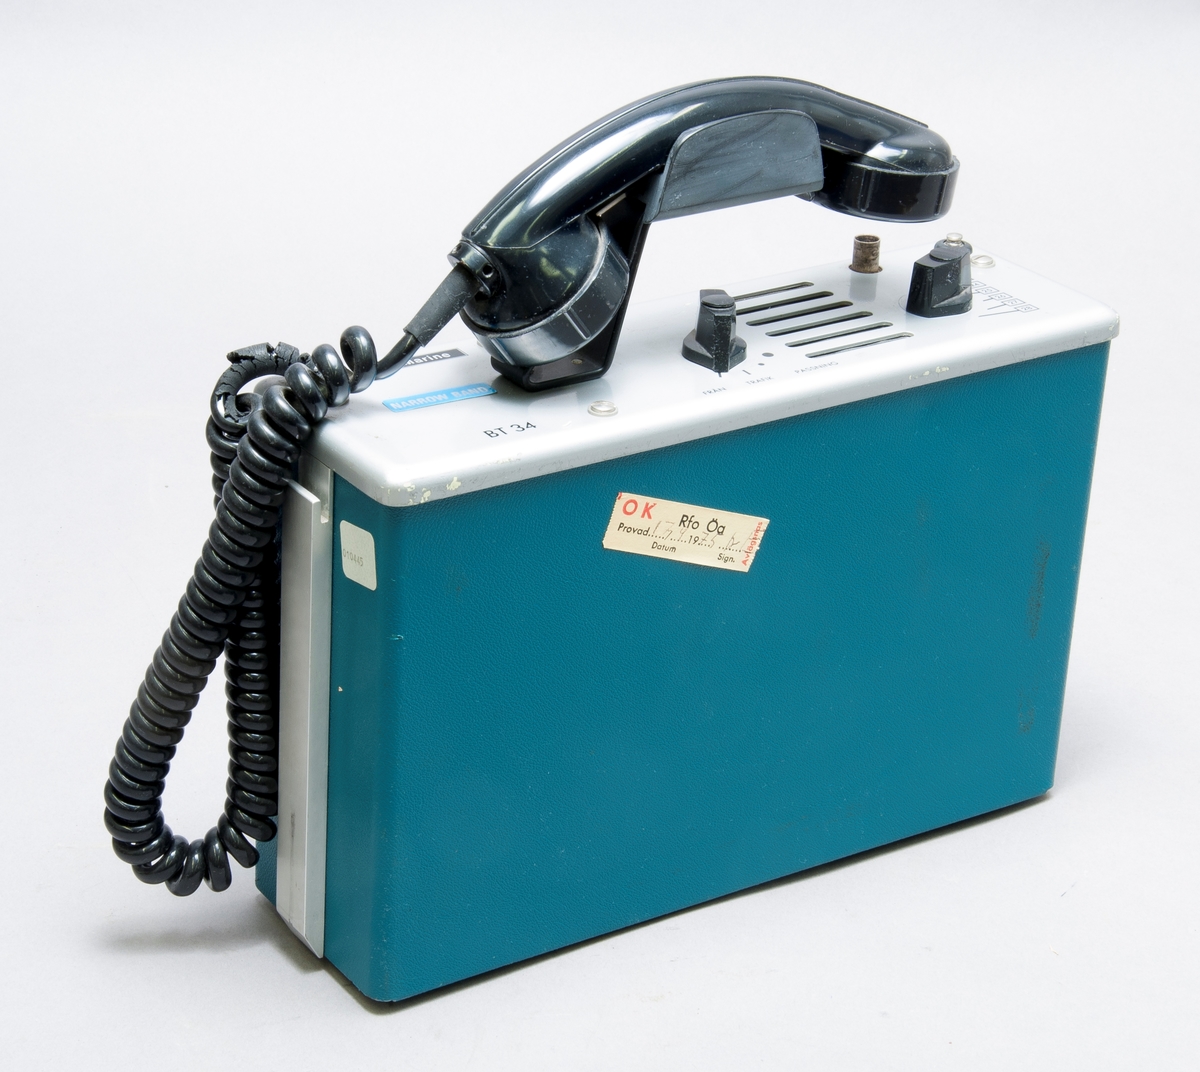 Radiotelefon, VHF, Tvt typ BT 34.